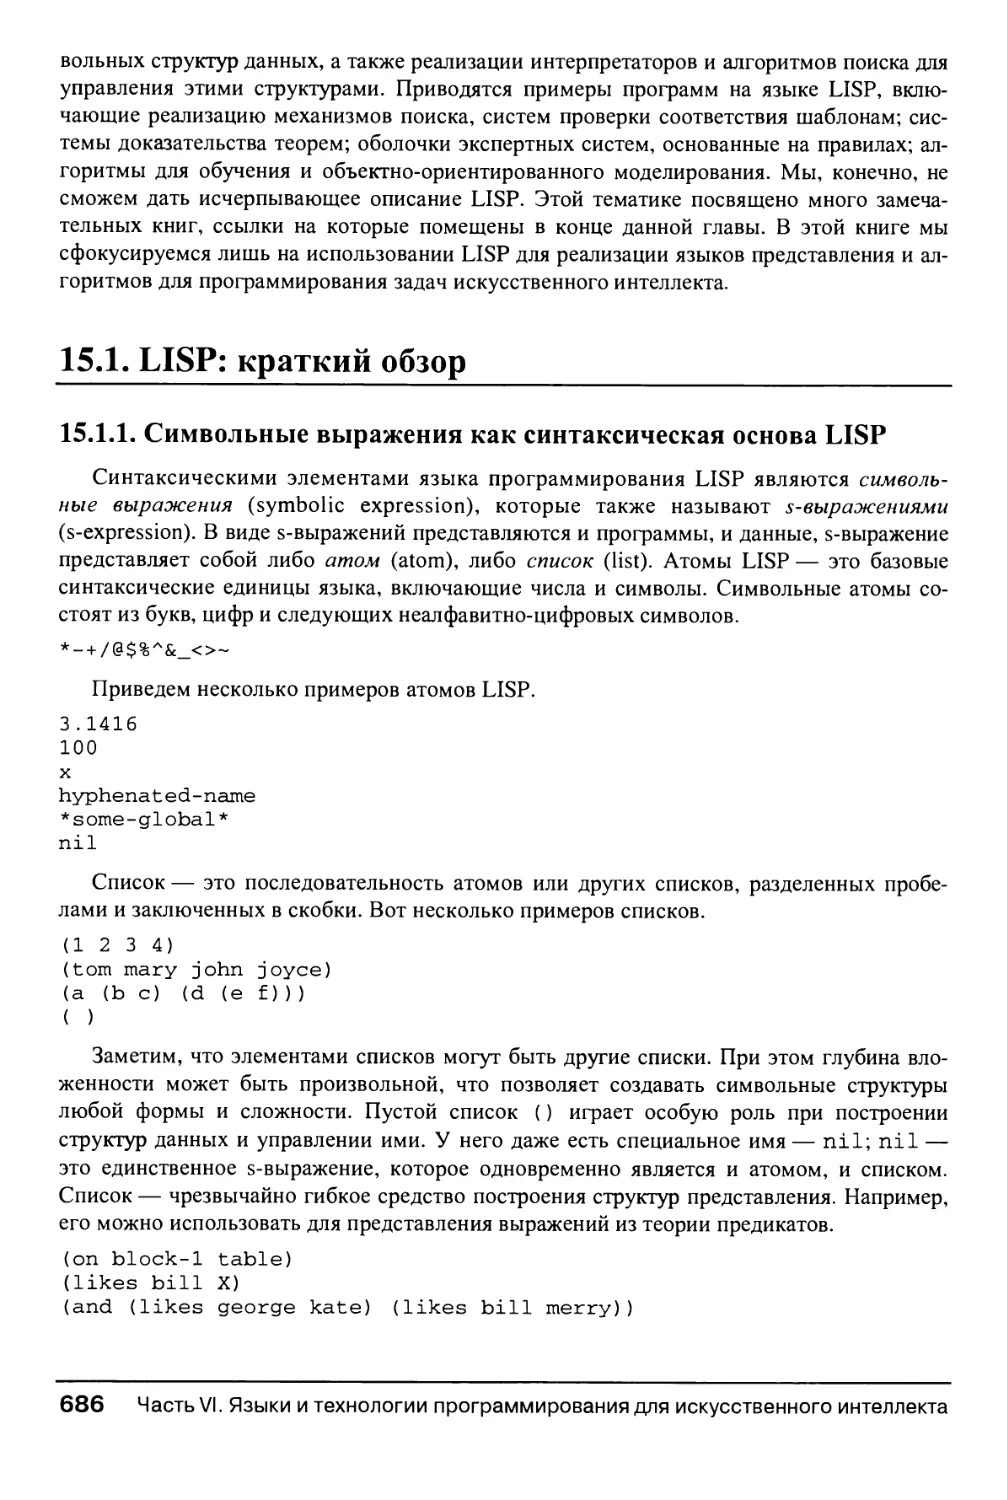 15.1. LISP: краткий обзор